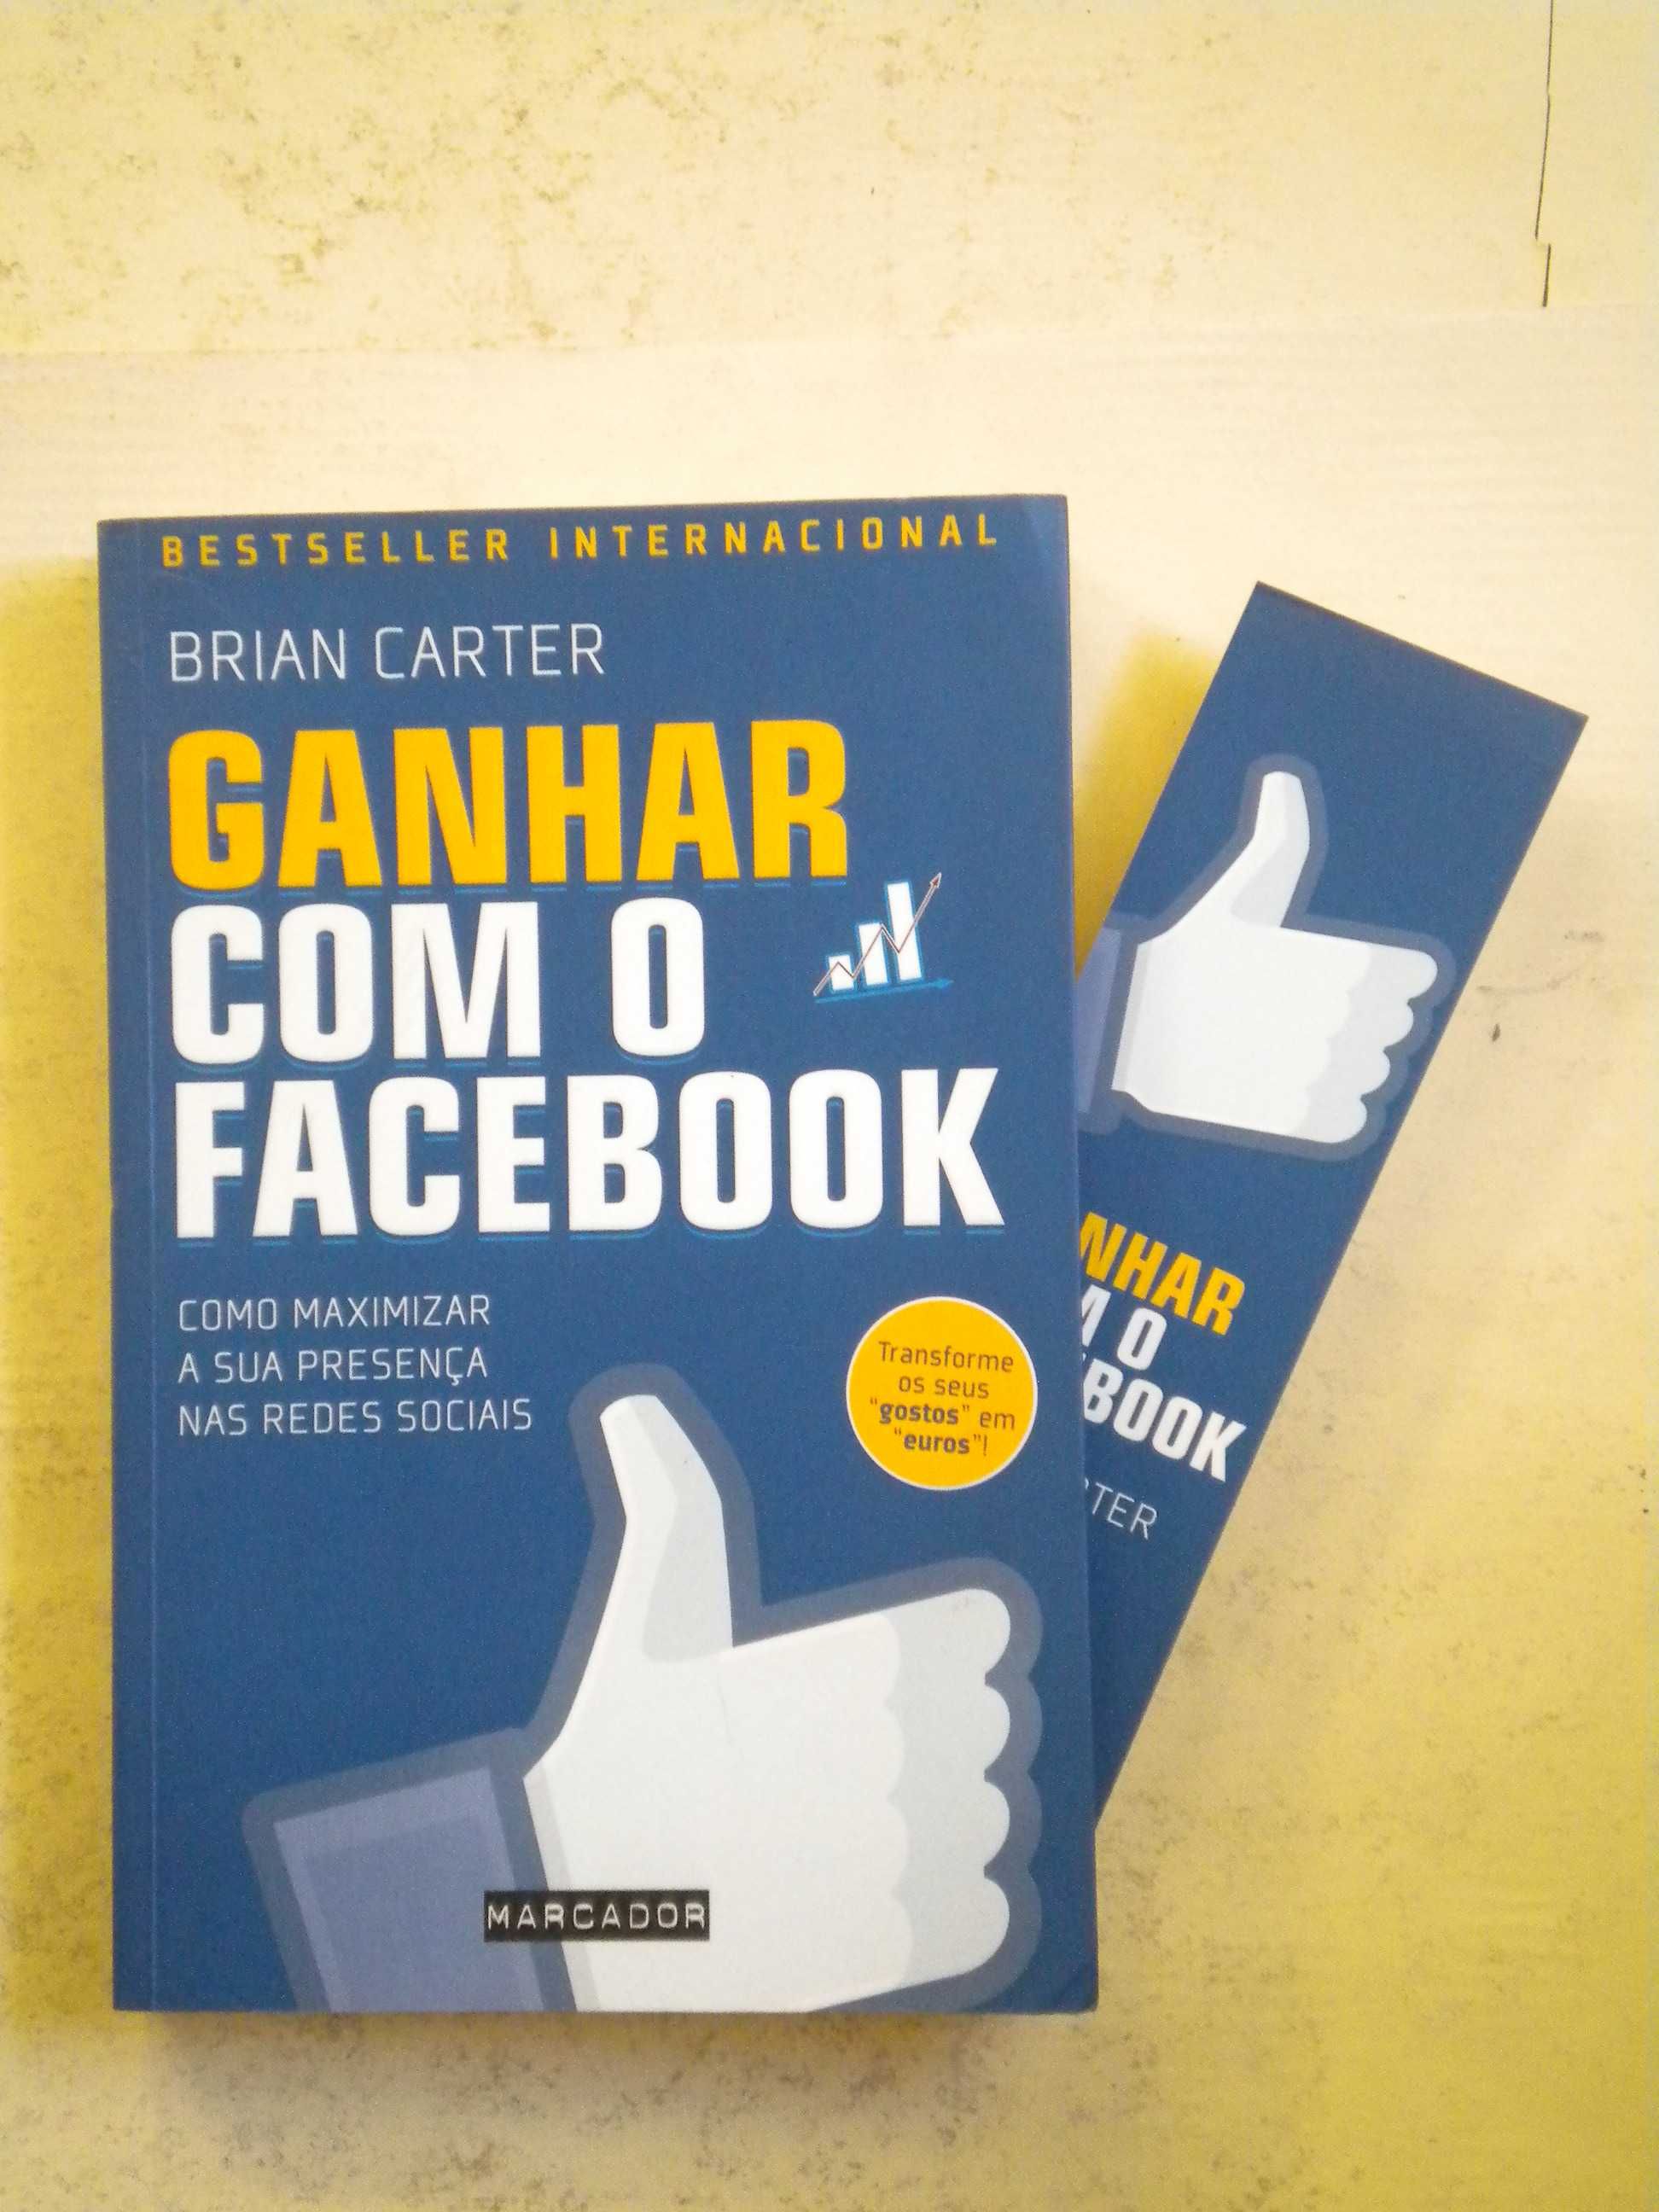 Ganhar com o Facebook
de Brian Carter